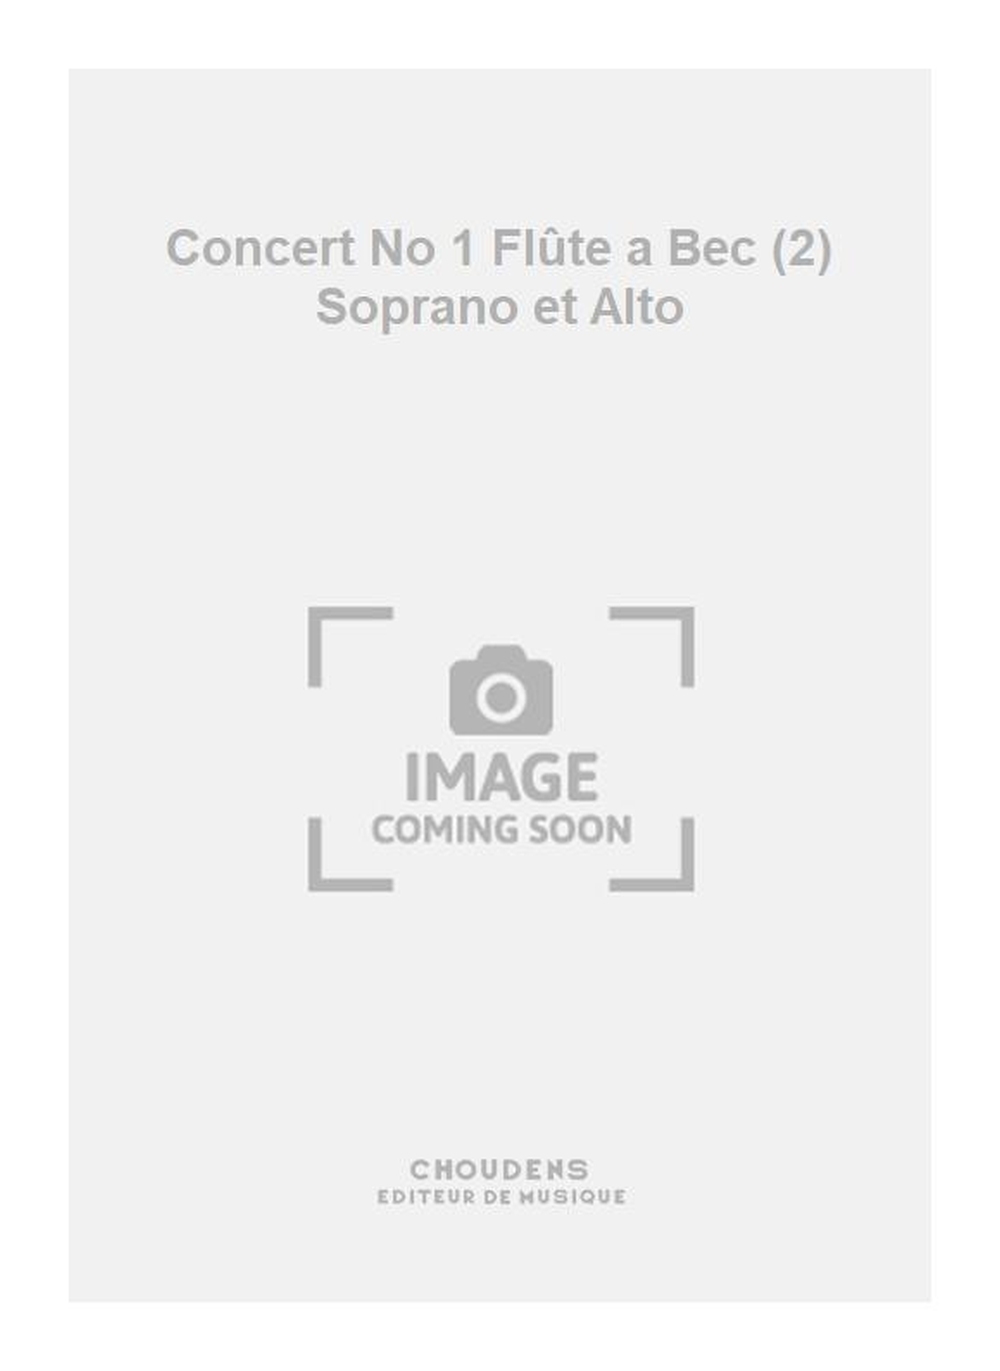 Hody: Concert No 1 Flte a Bec (2) Soprano et Alto